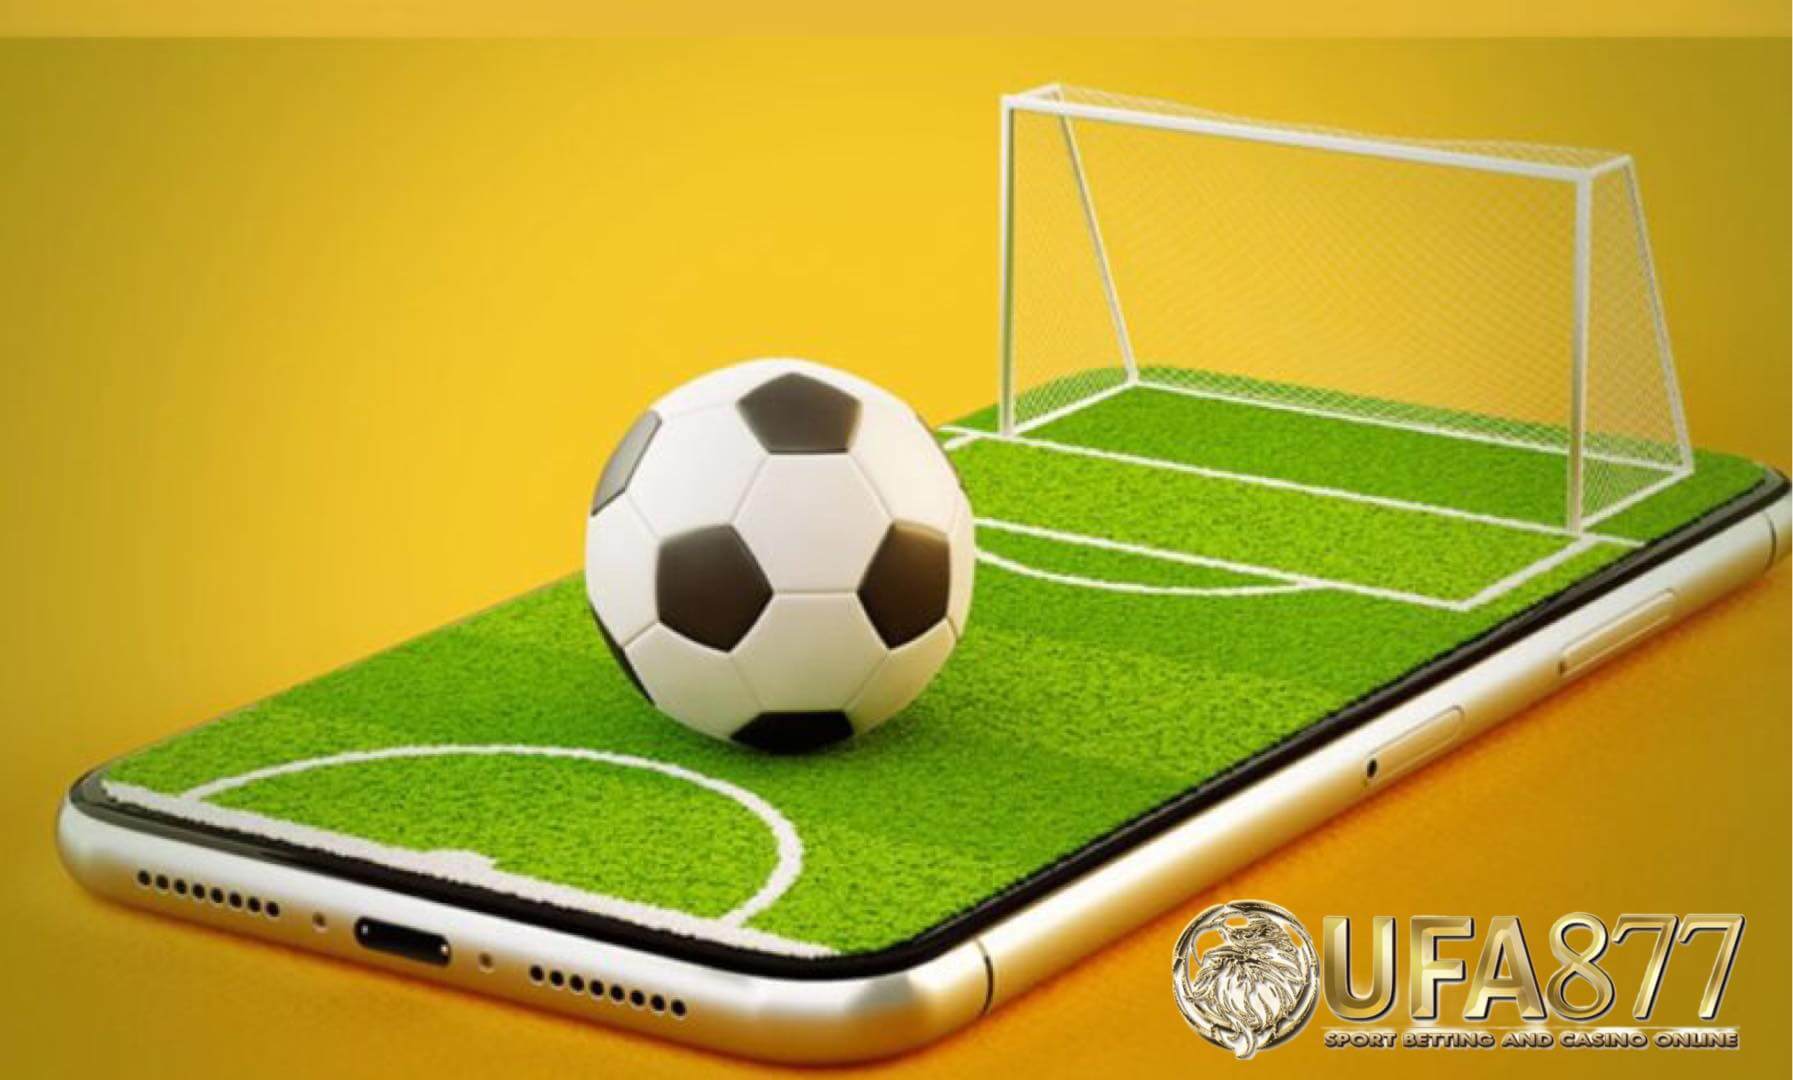 แทงบอลสนุก ได้ทั้งปีด้วยเว็บ Ufabet168